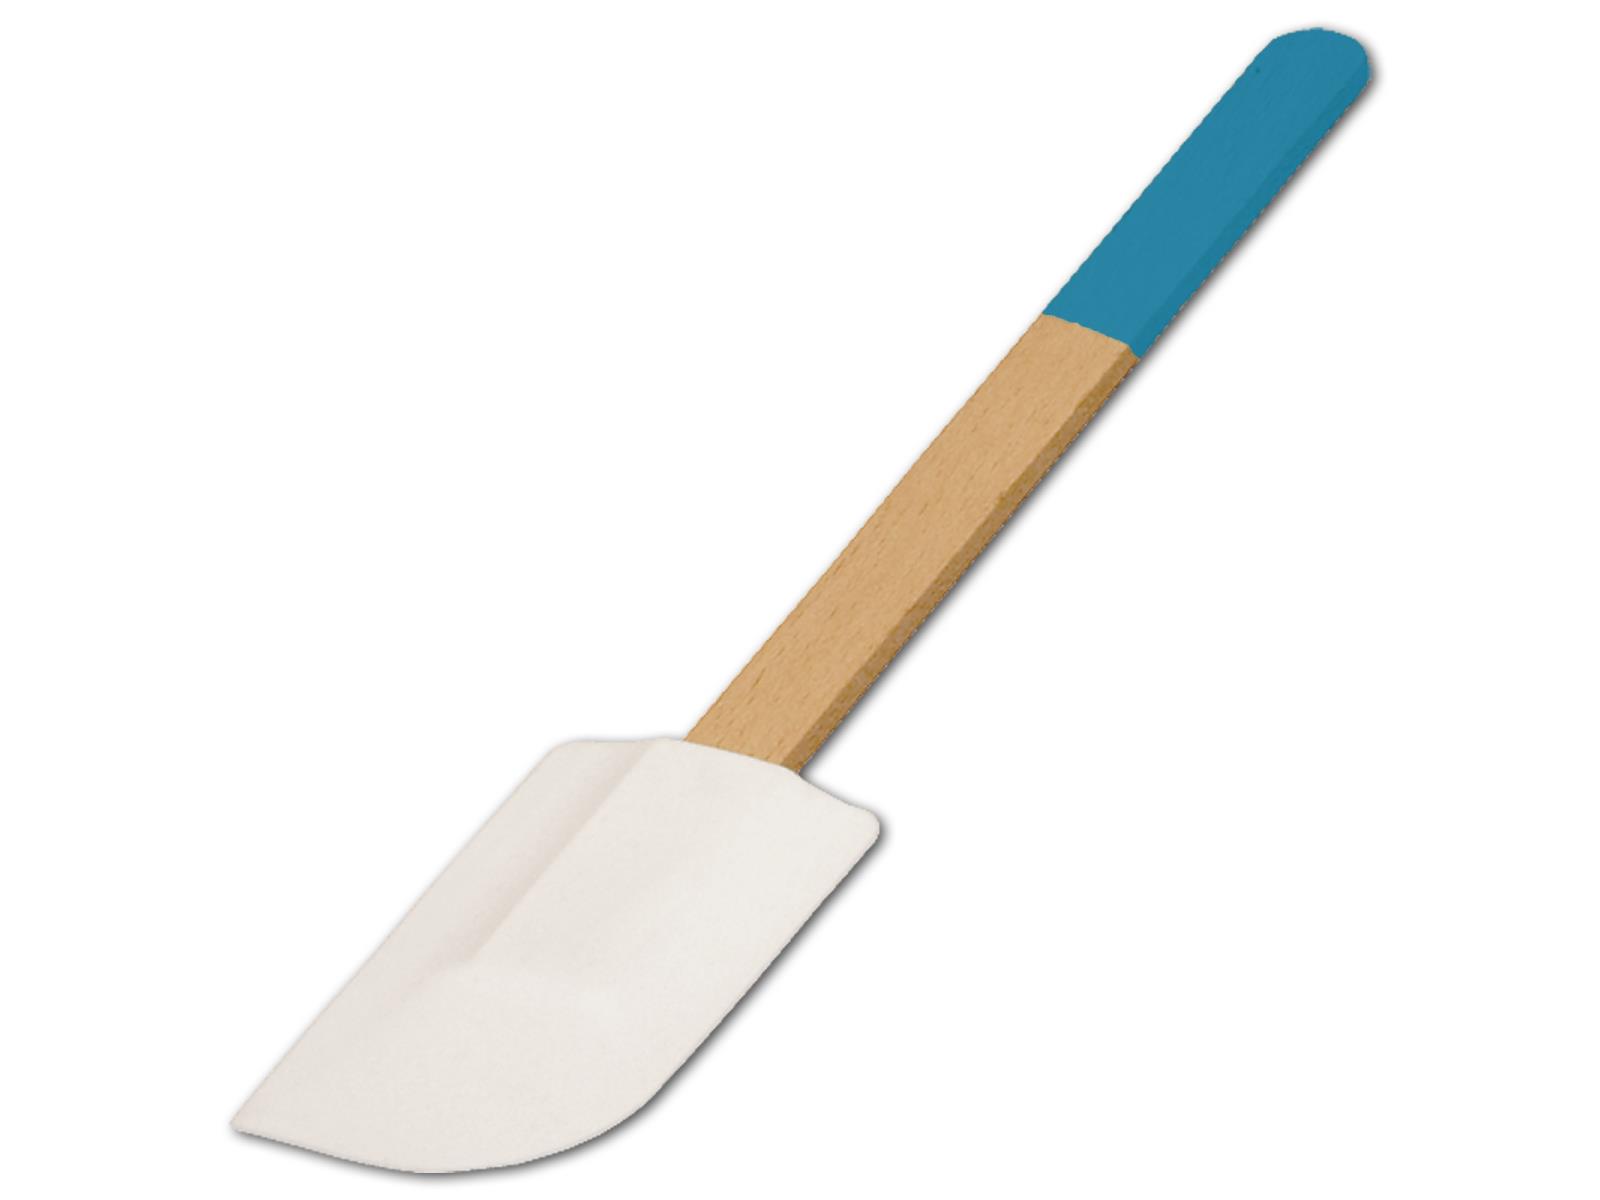 Teigschaber, breit, mit farbigem Griff, himmelblau, aus Holz 28 cm